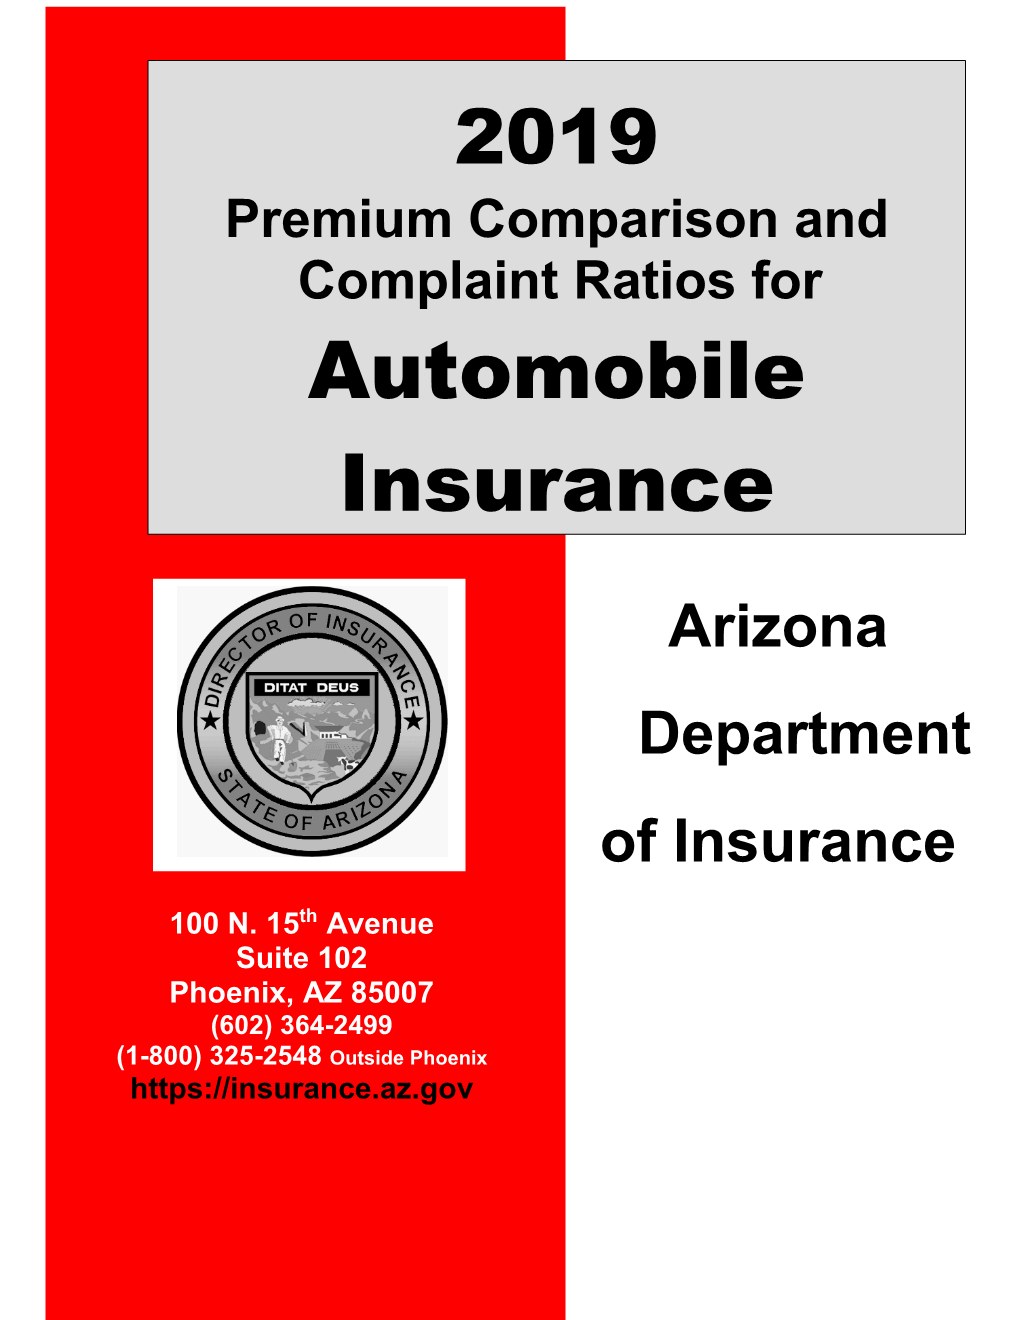 Premium Comparison and Complaint Ratios for Automobile Insurance